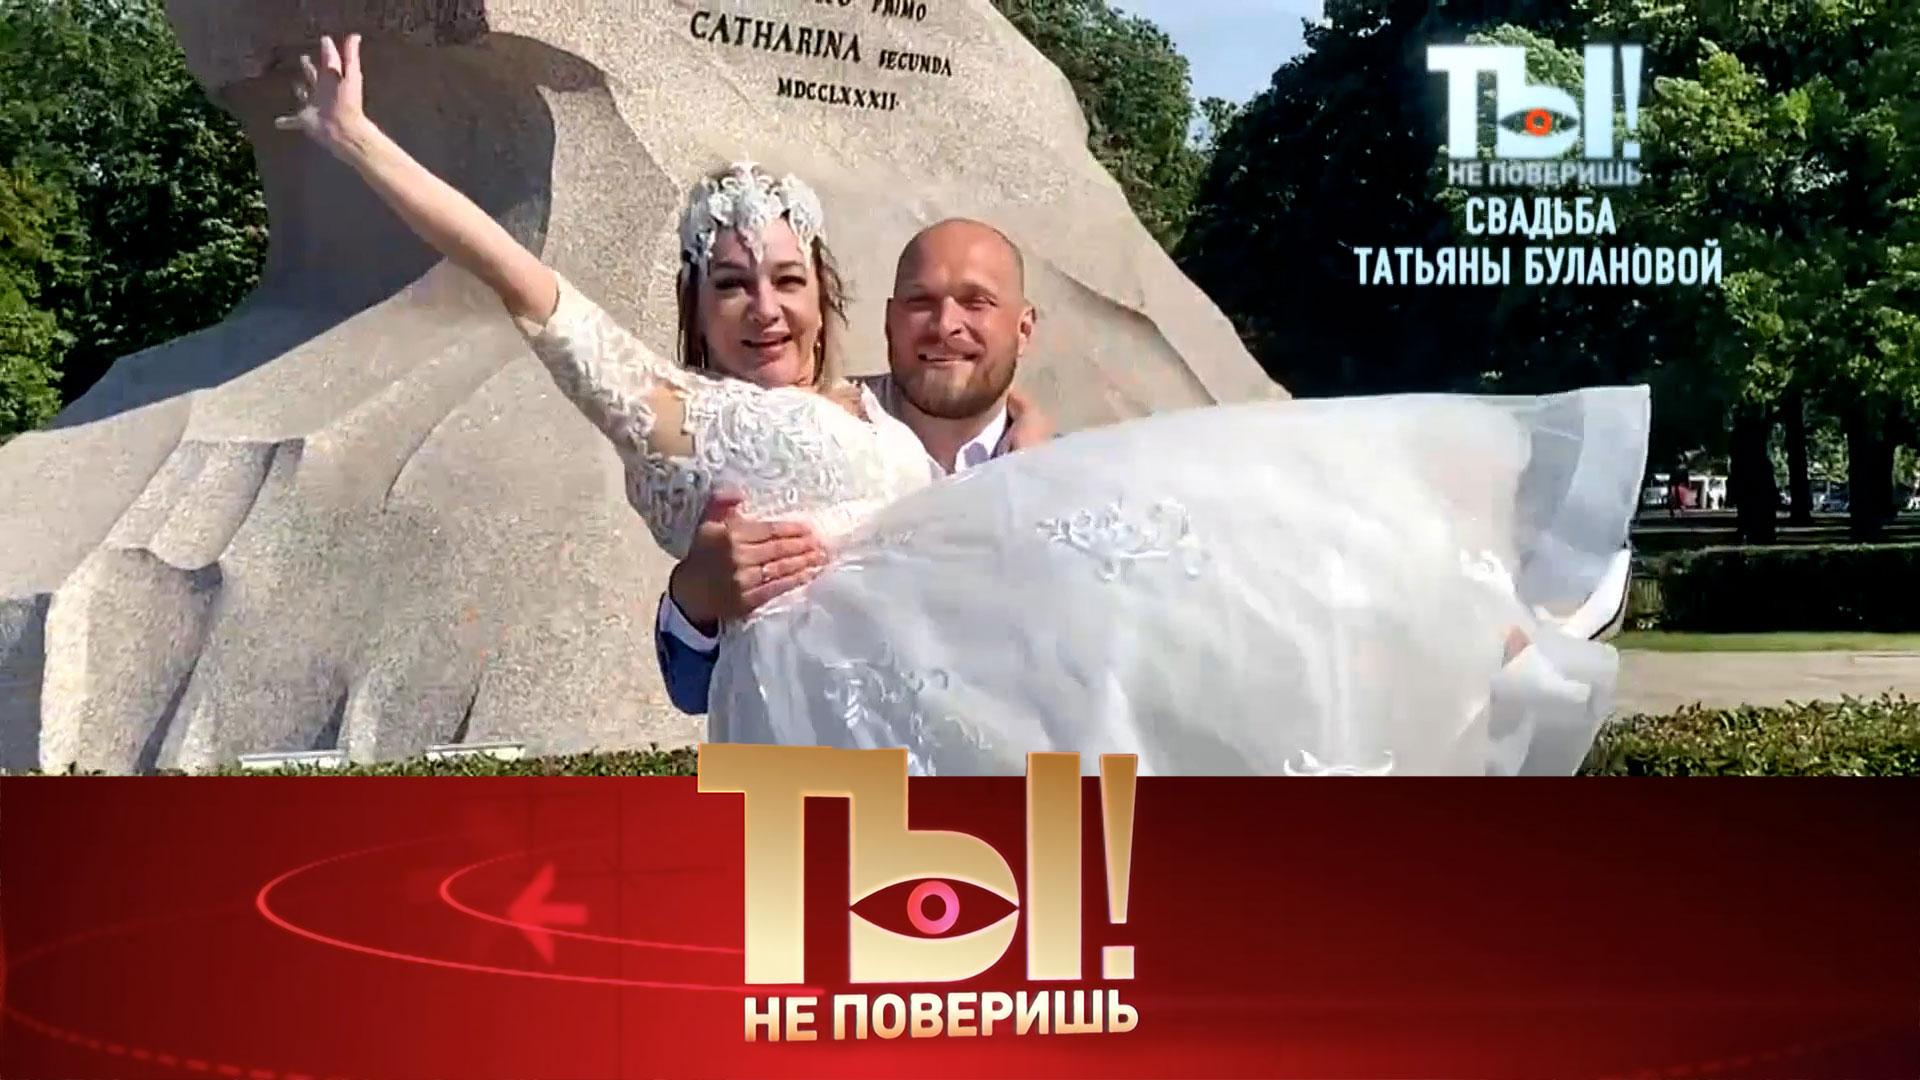 Эксклюзивные кадры со свадьбы Татьяны Булановой и юбилей Наташи Королёвой | Ты не поверишь!